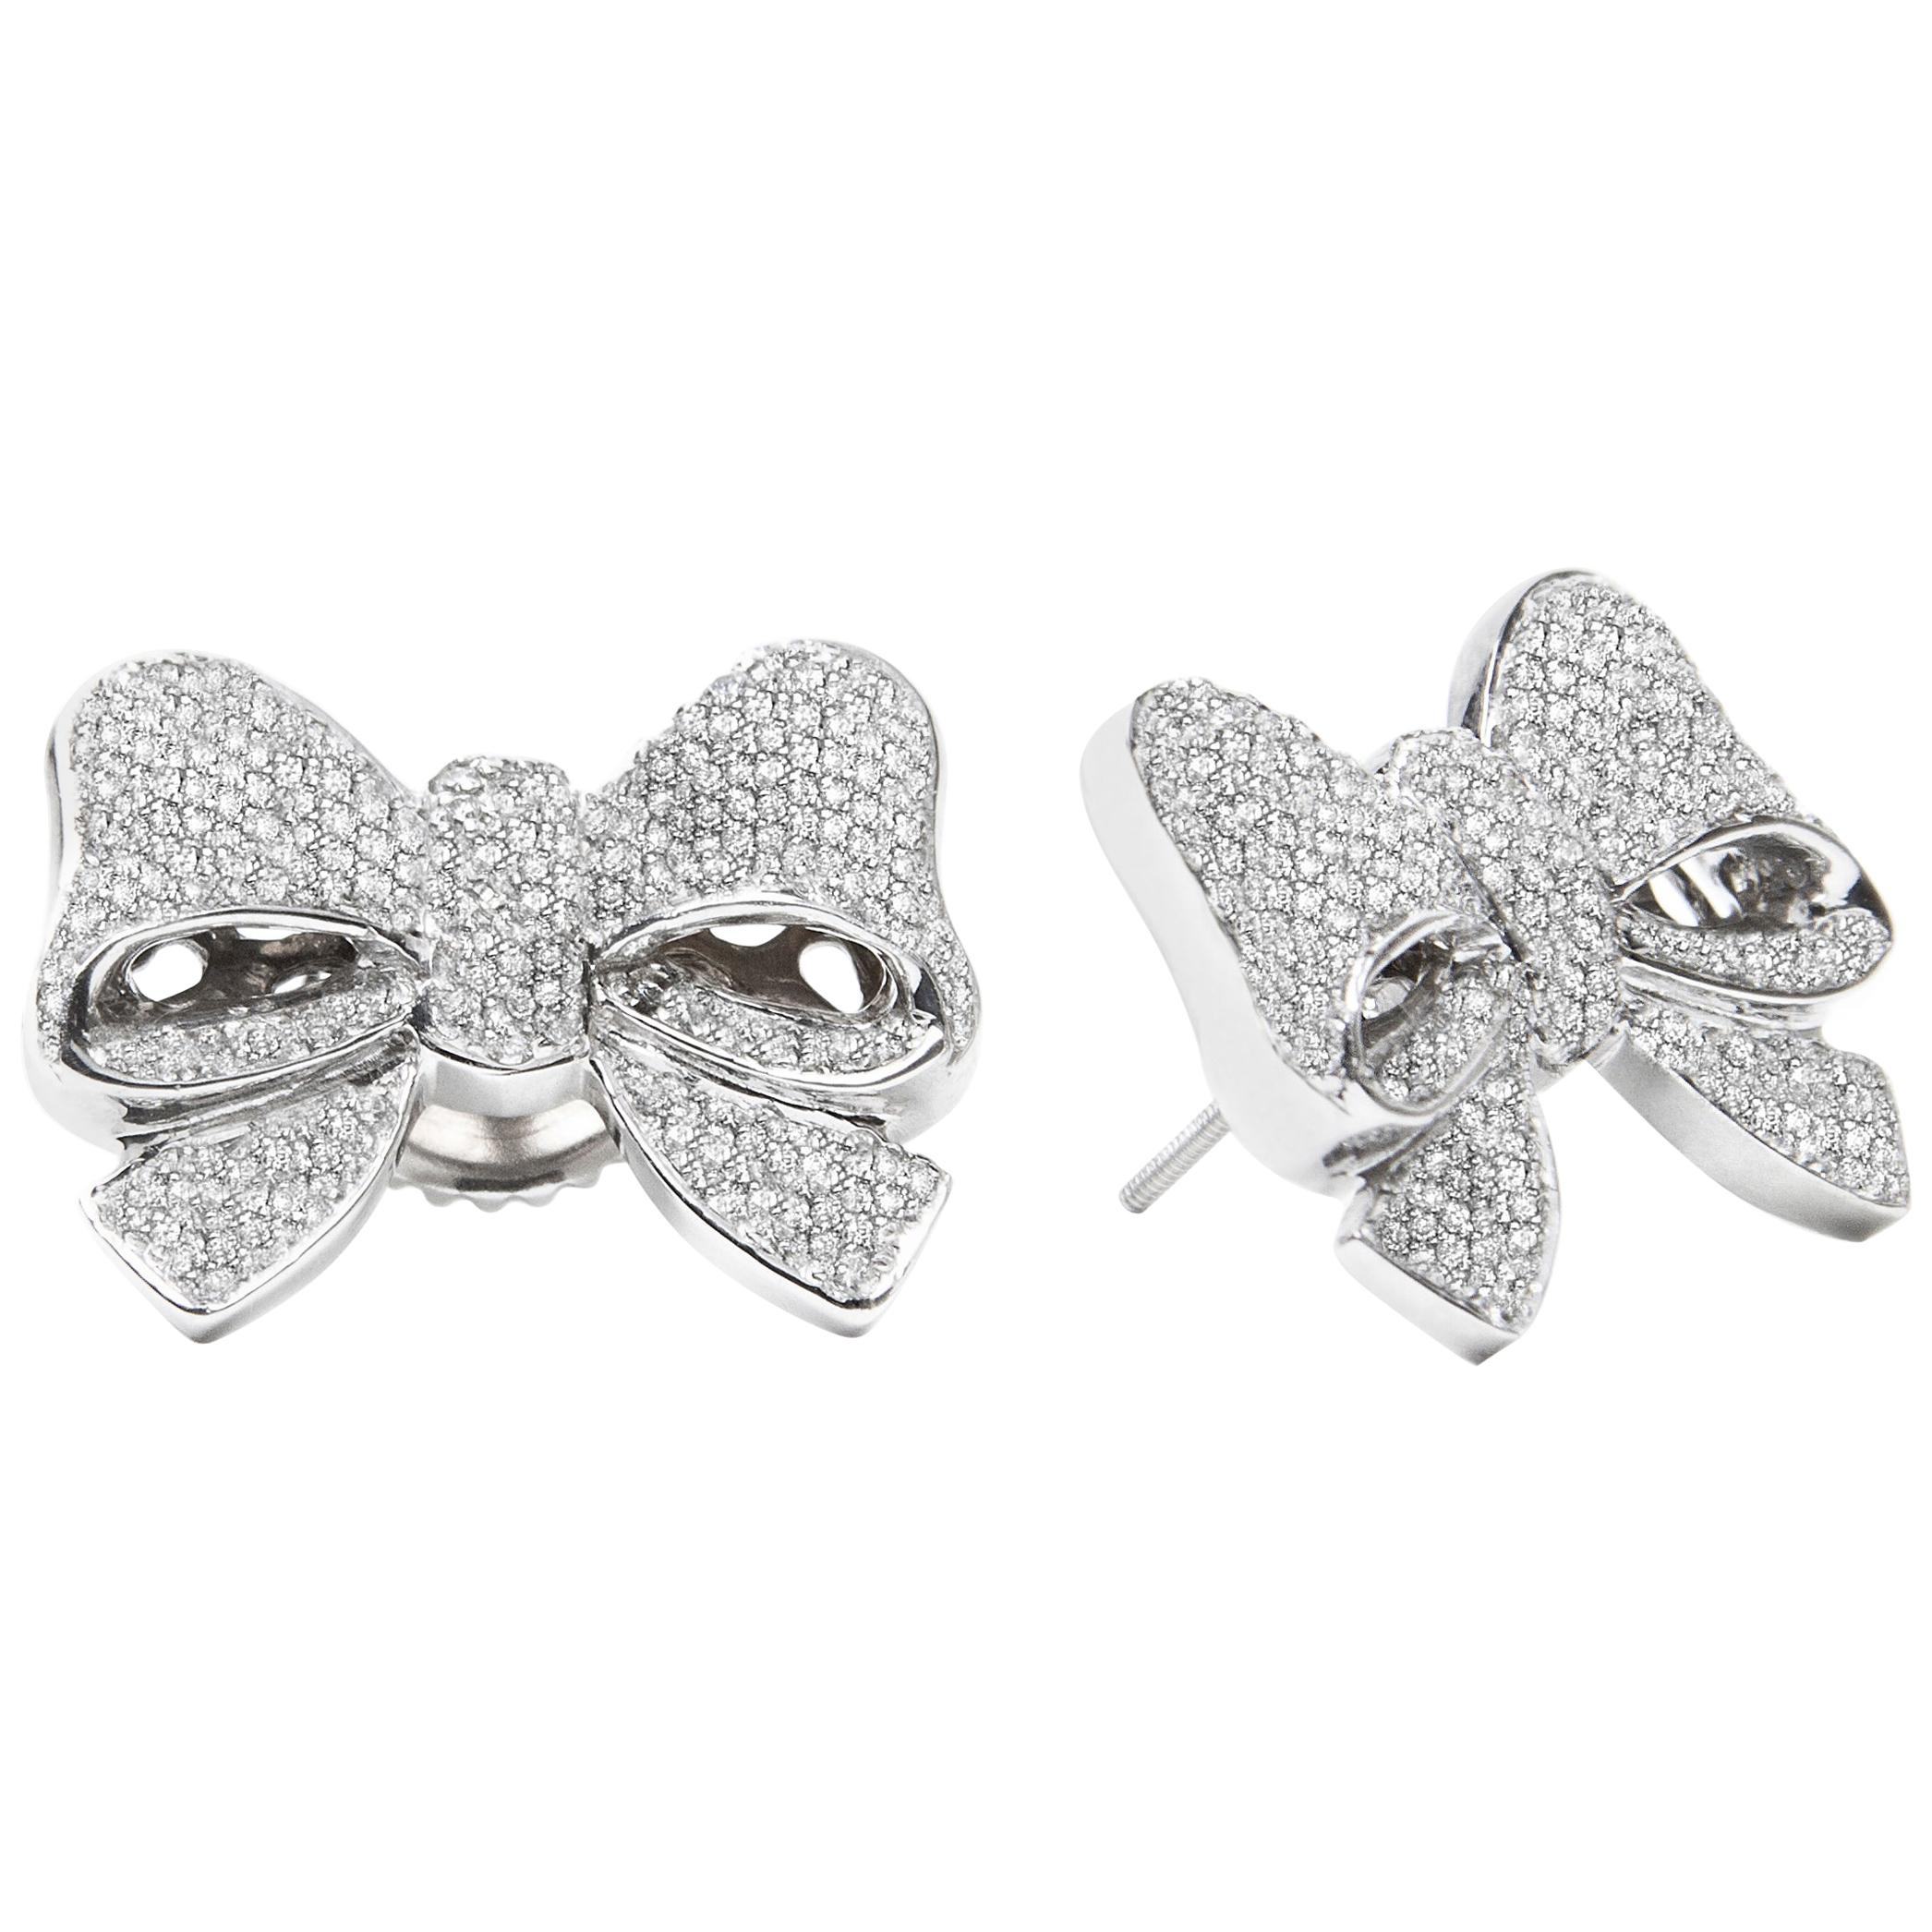 White Gold White Diamond Earrings, Bow Earrings For Sale